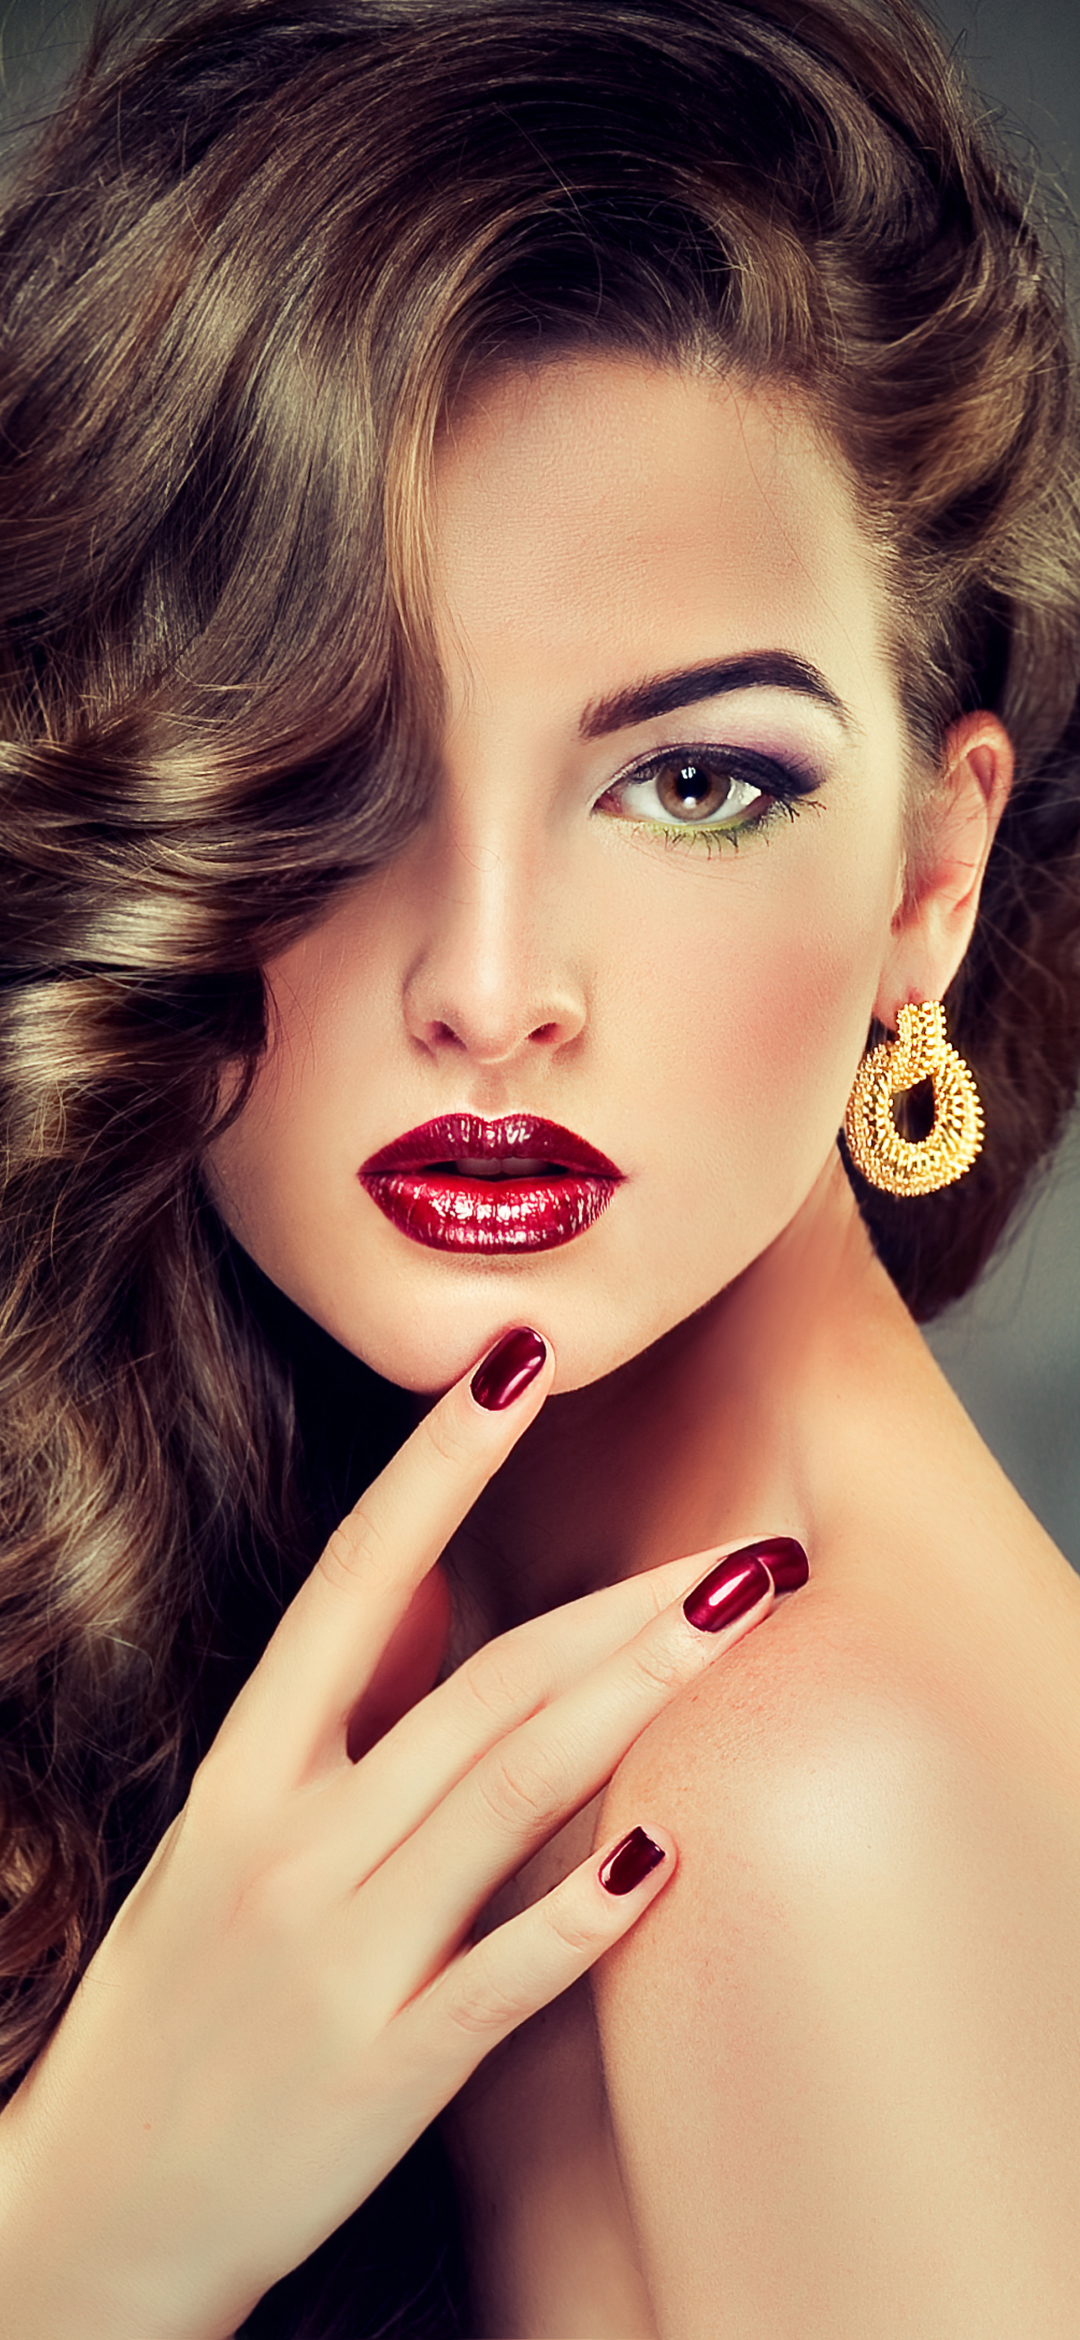 Download mobile wallpaper Model, Women, Earrings, Curl, Lipstick for free.